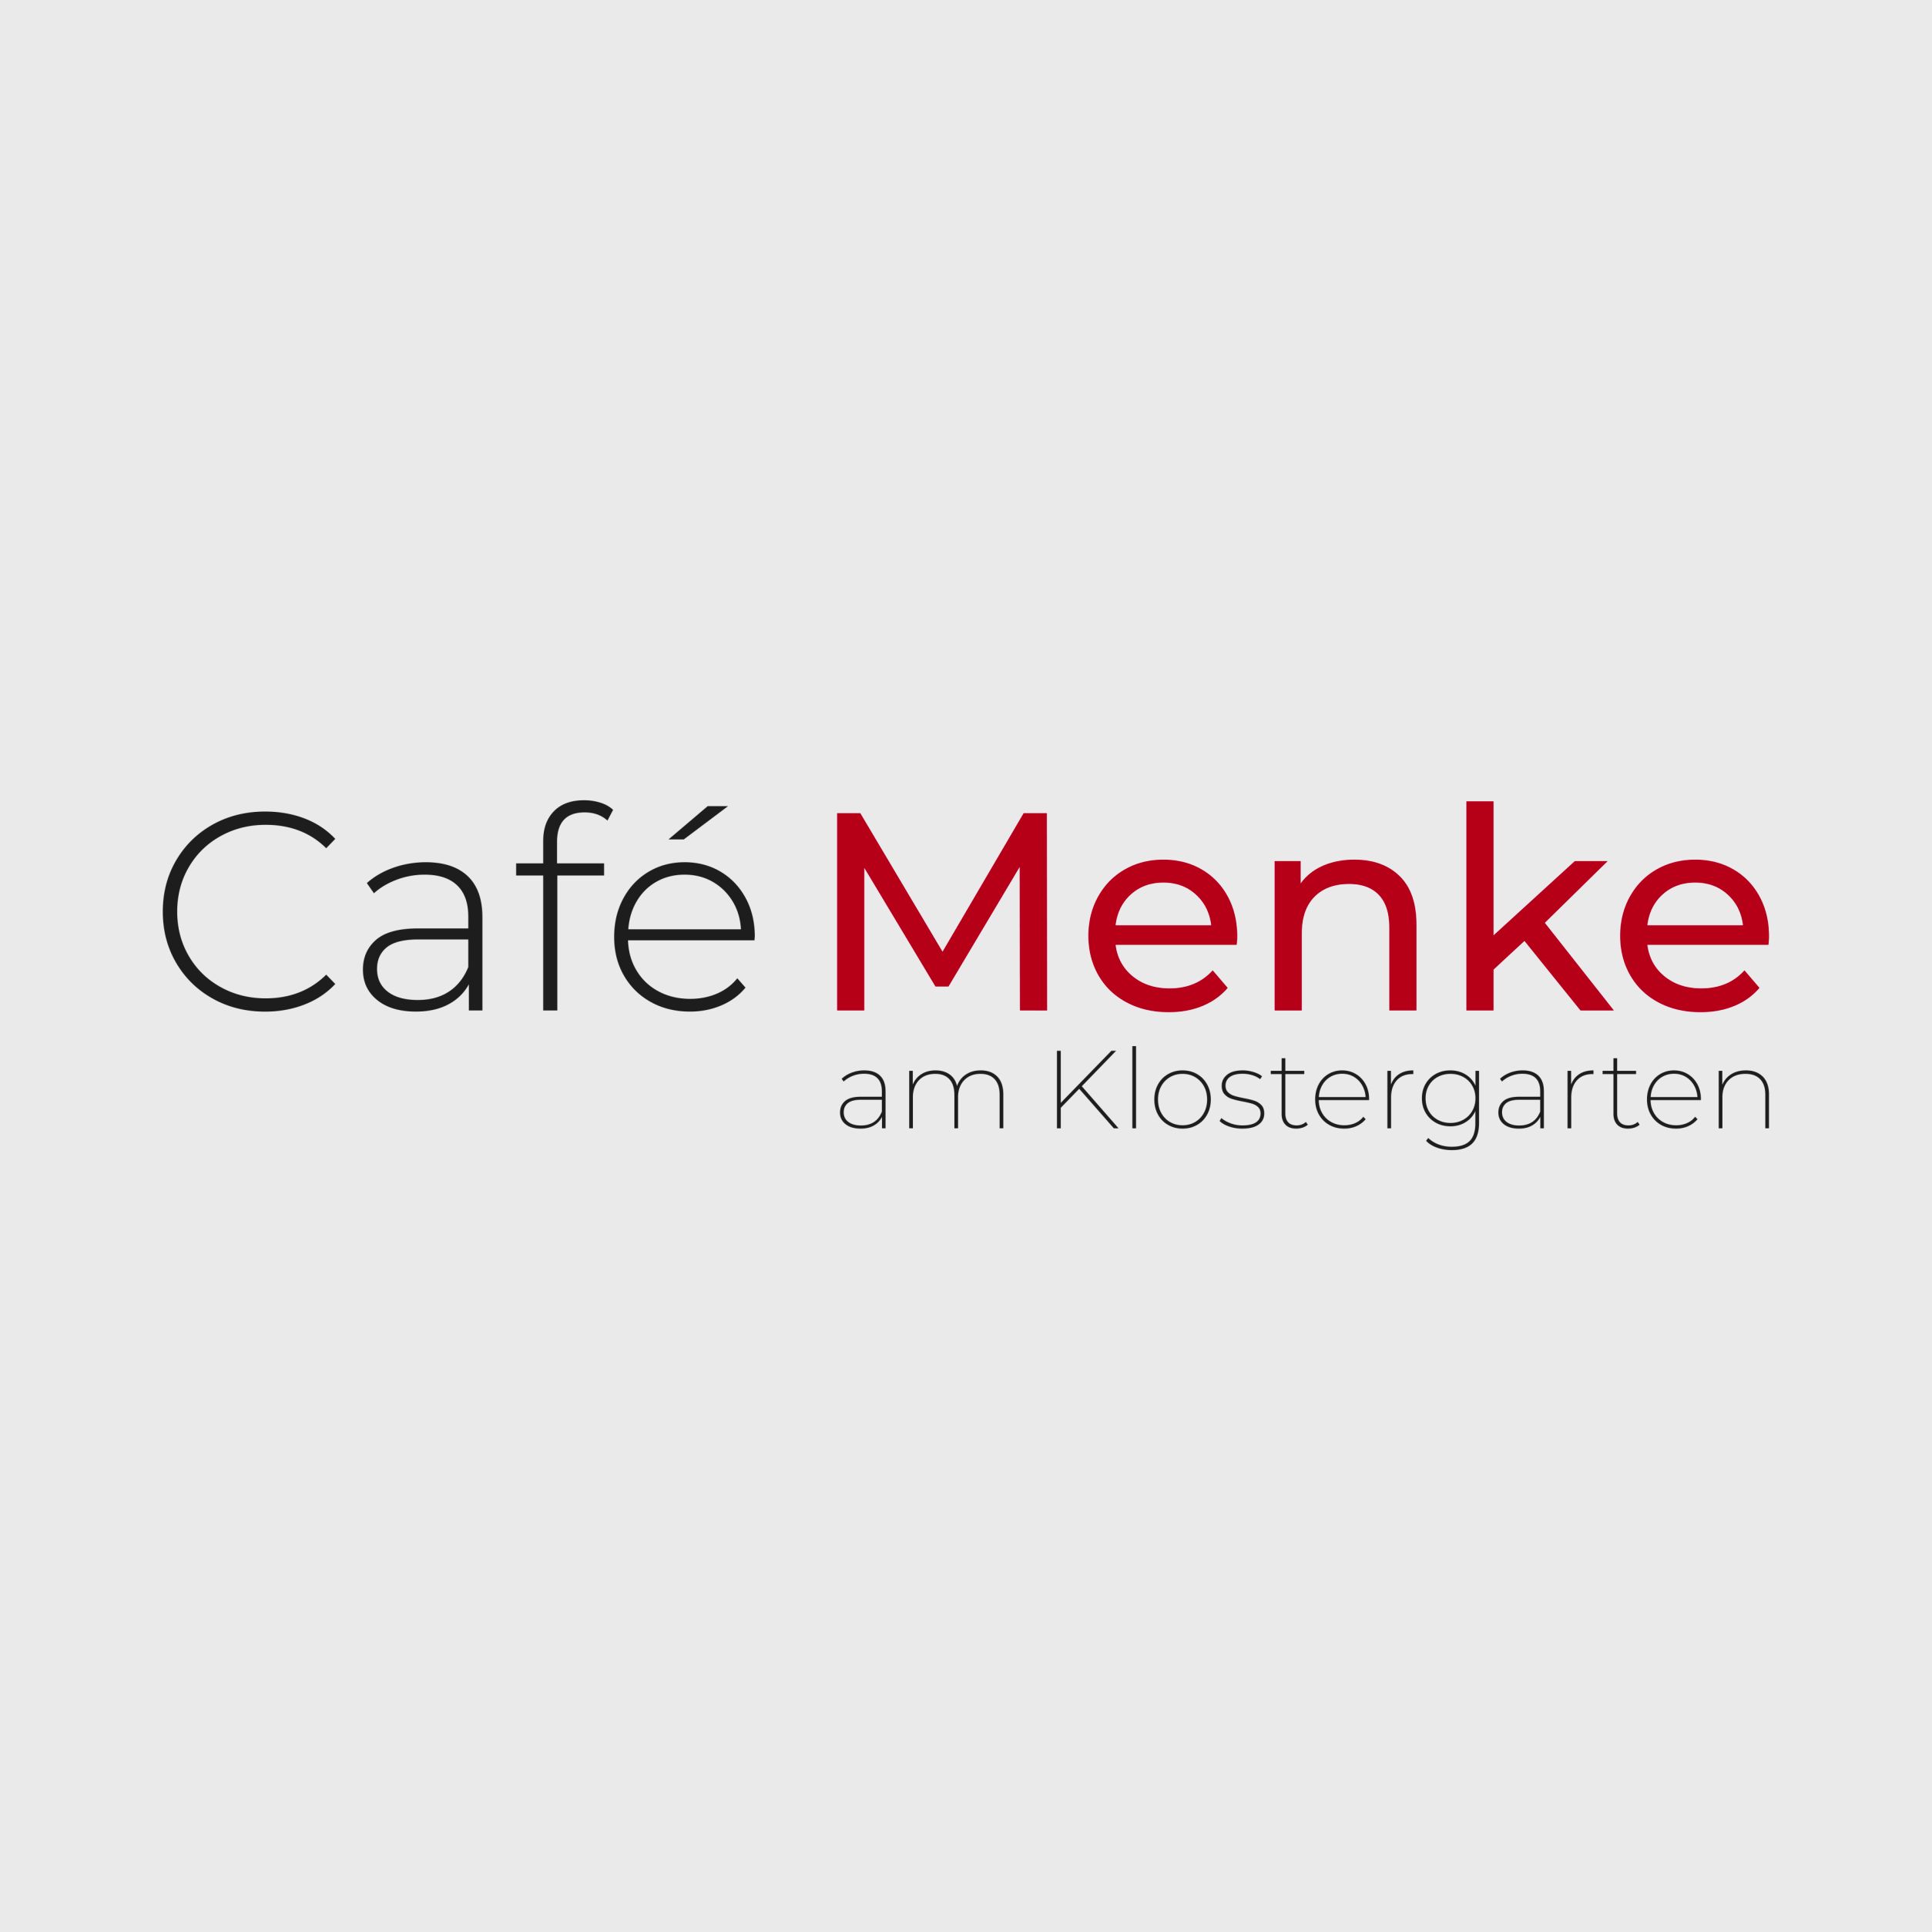 Café Menke - Stiftscafé